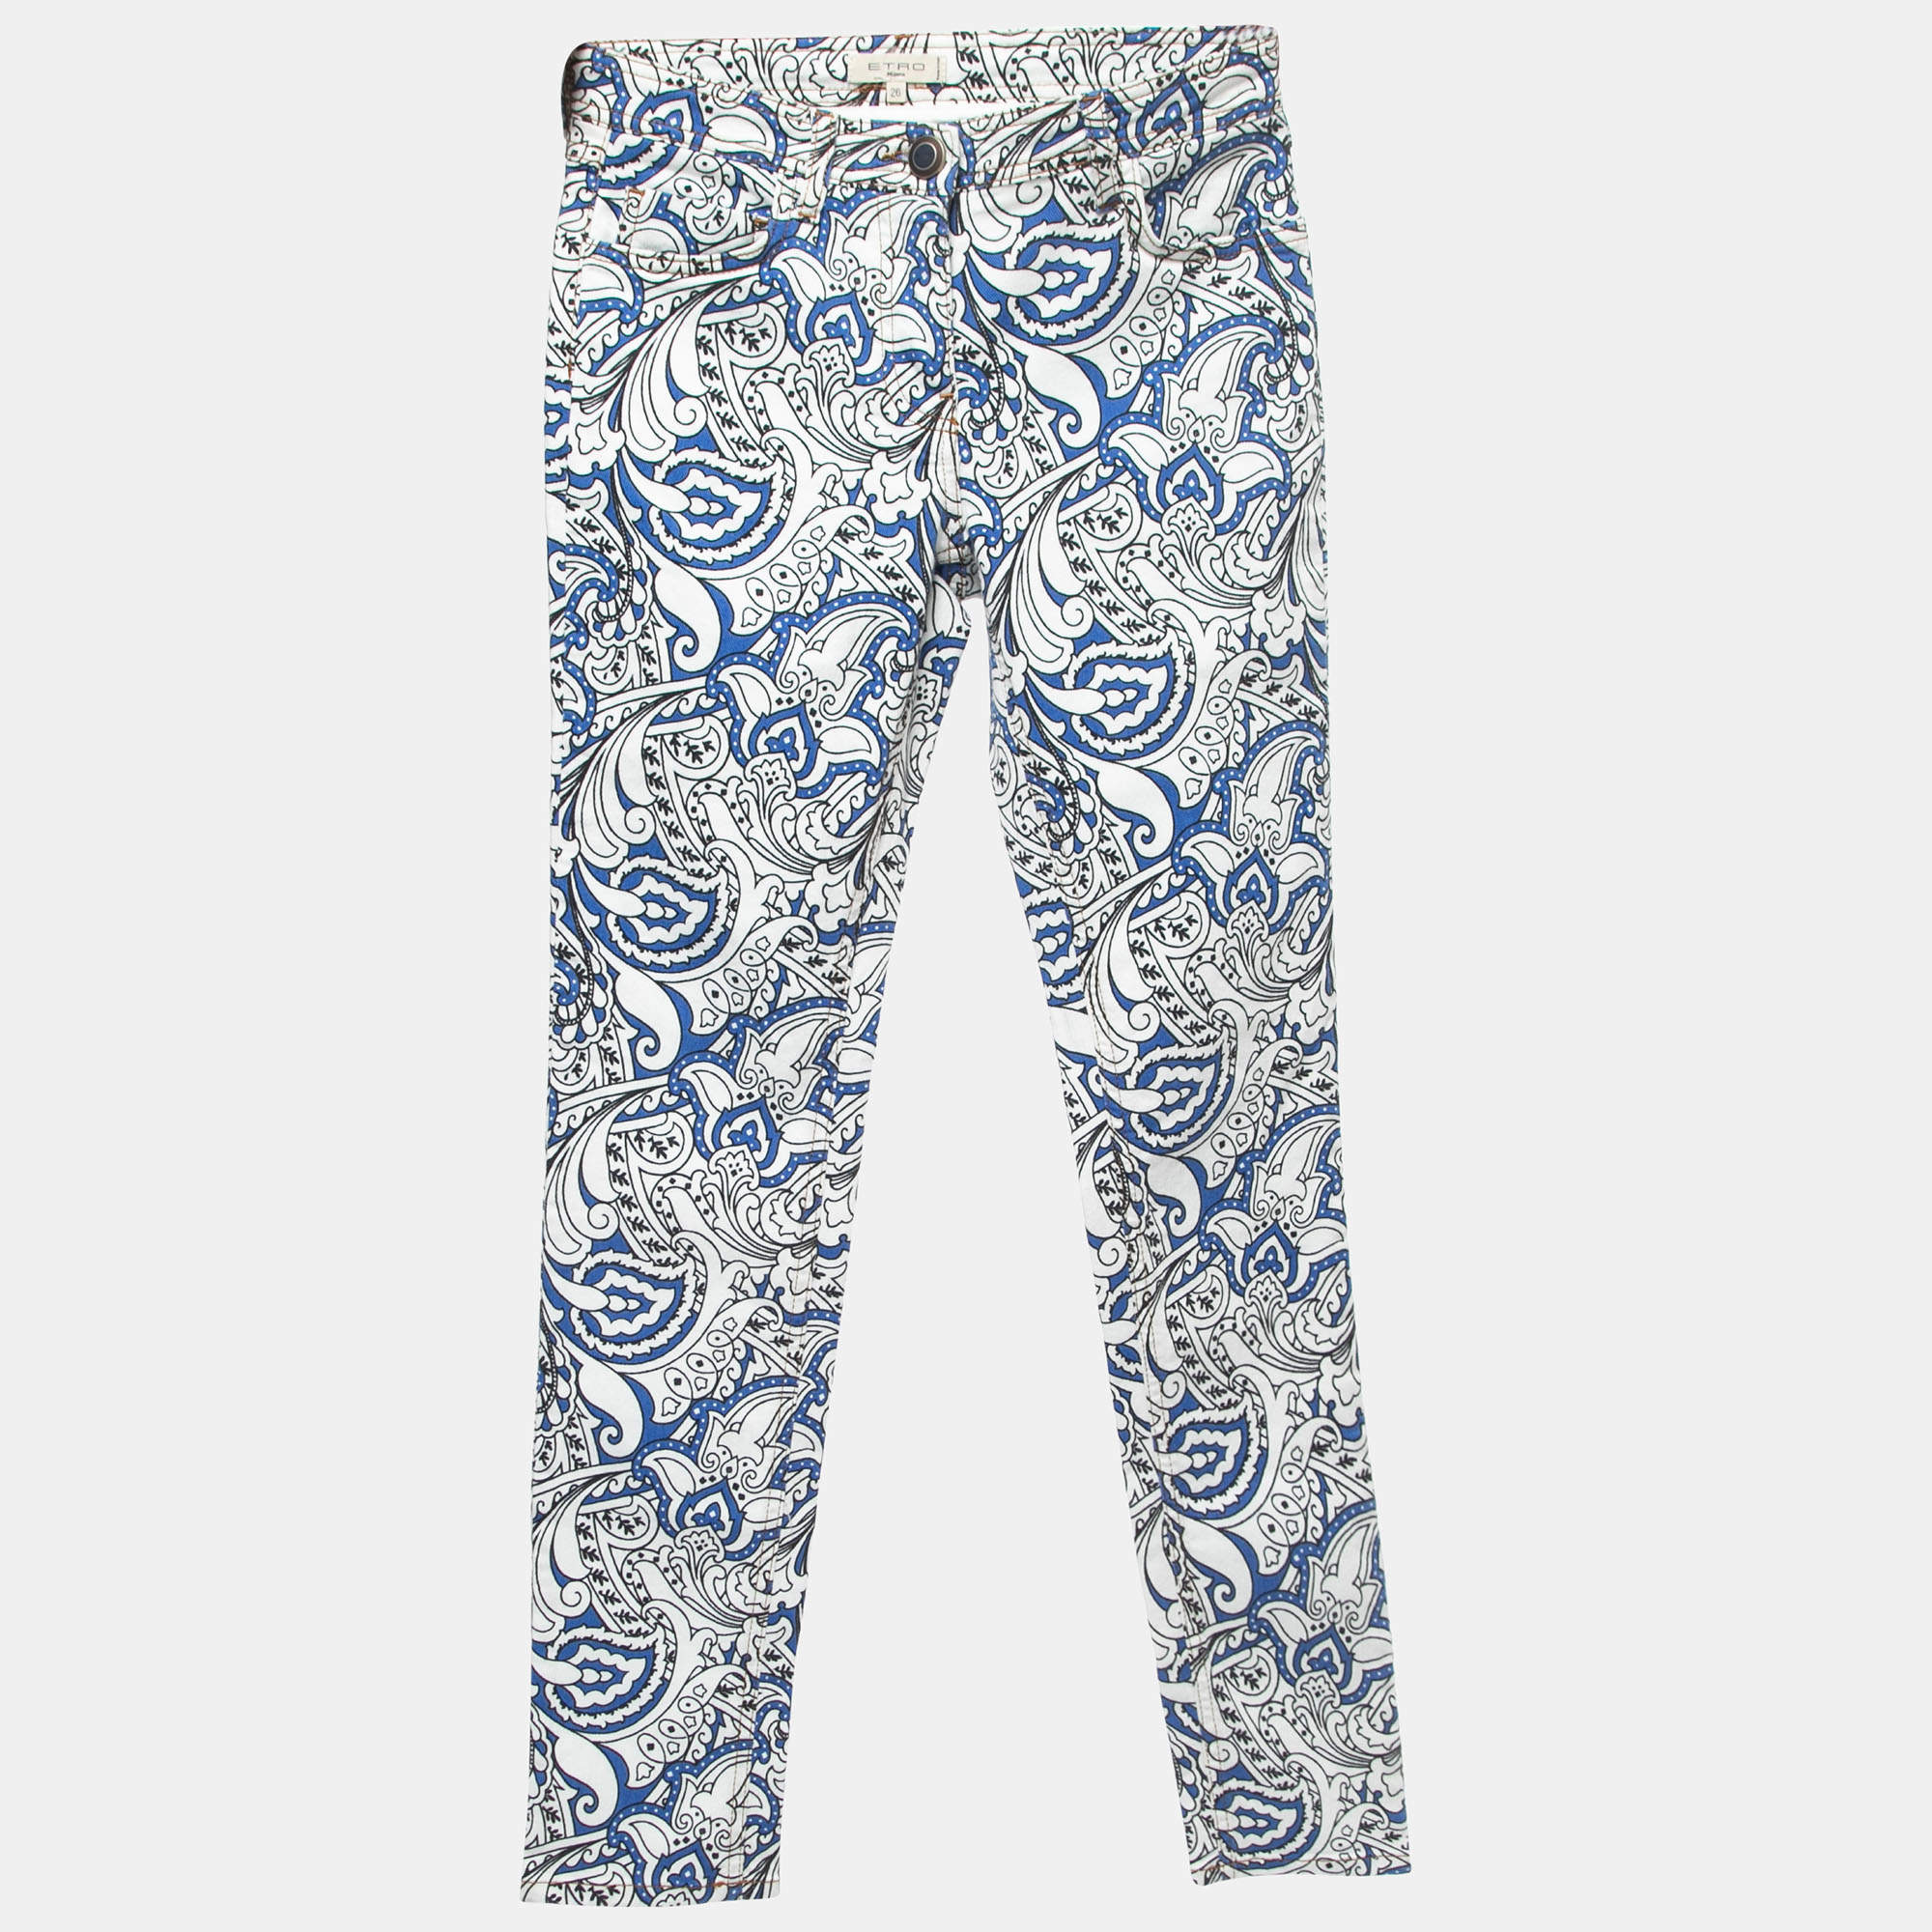 ETRO paisley-print wide-leg Trousers - Farfetch